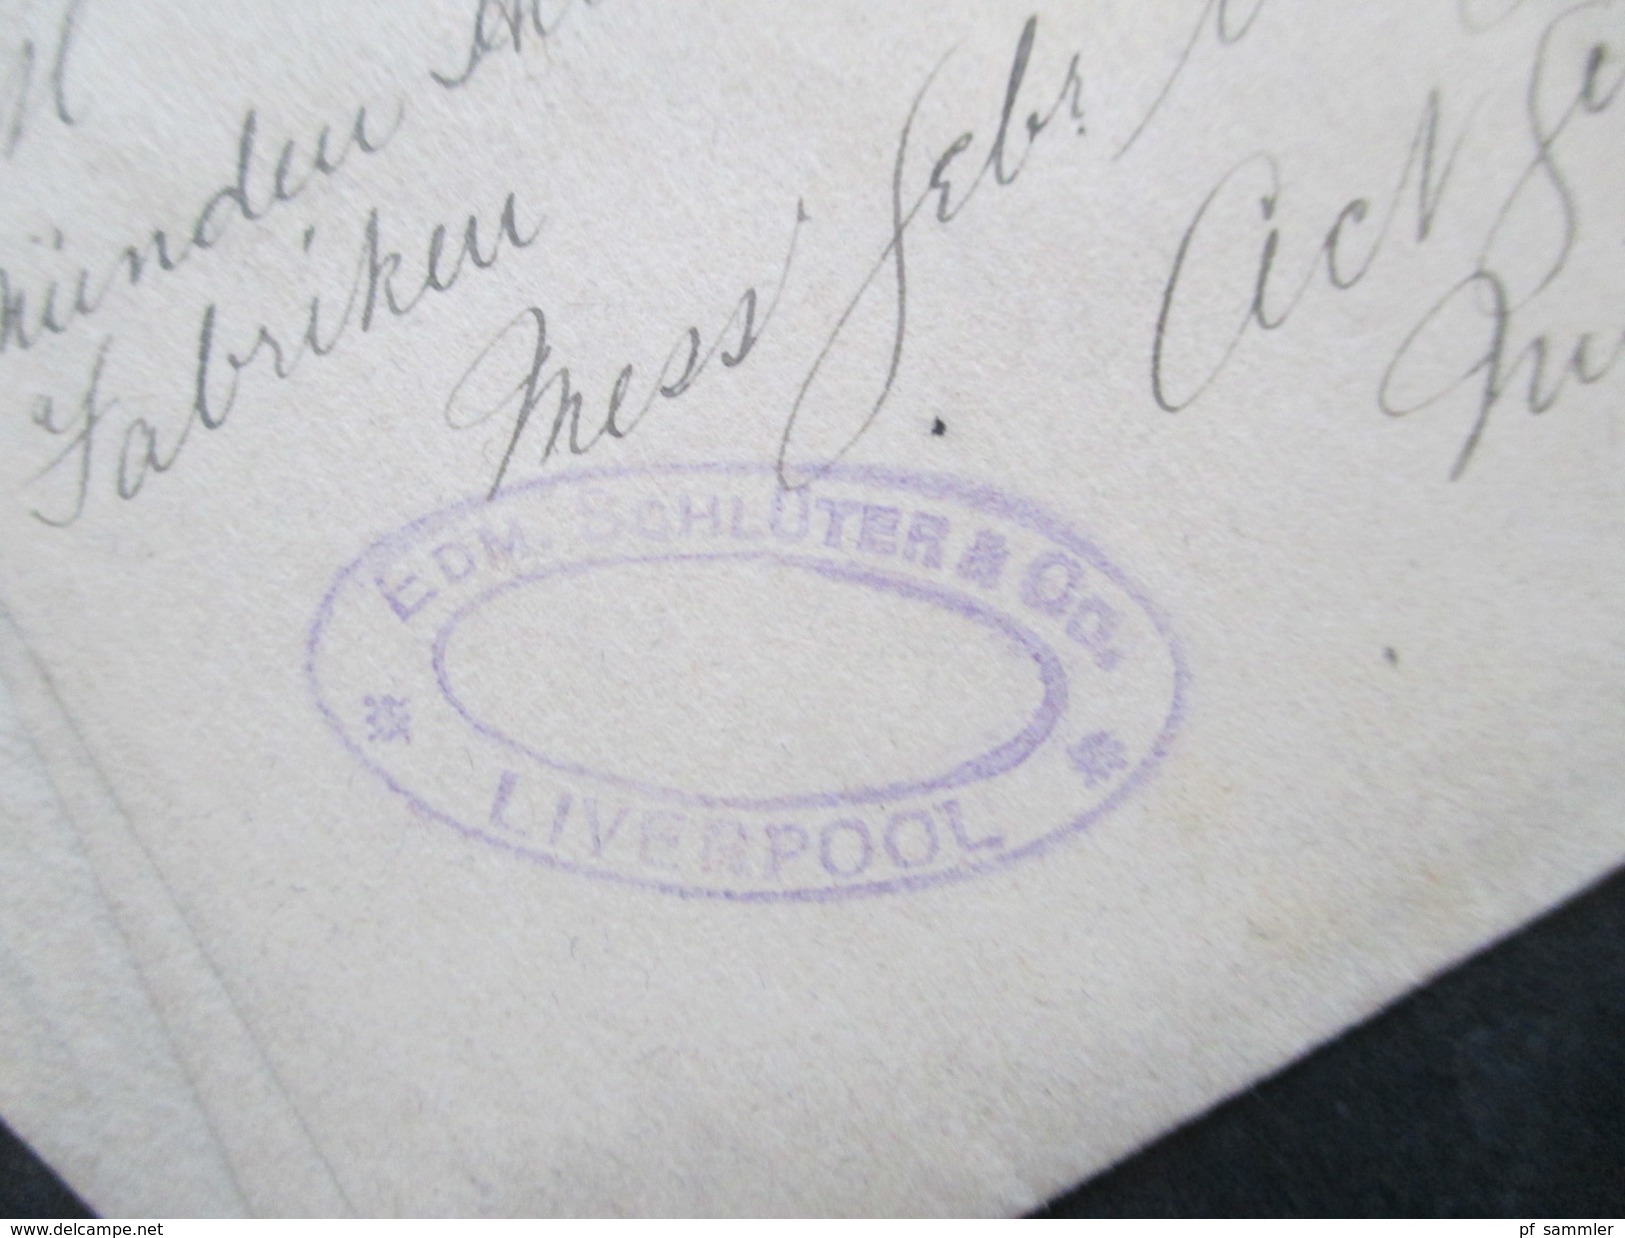 GB 7 Streifbänder um 1888 / 1892 z.T. Stempel Liverpool Exchange. Alle nach Deutschland gesendet!